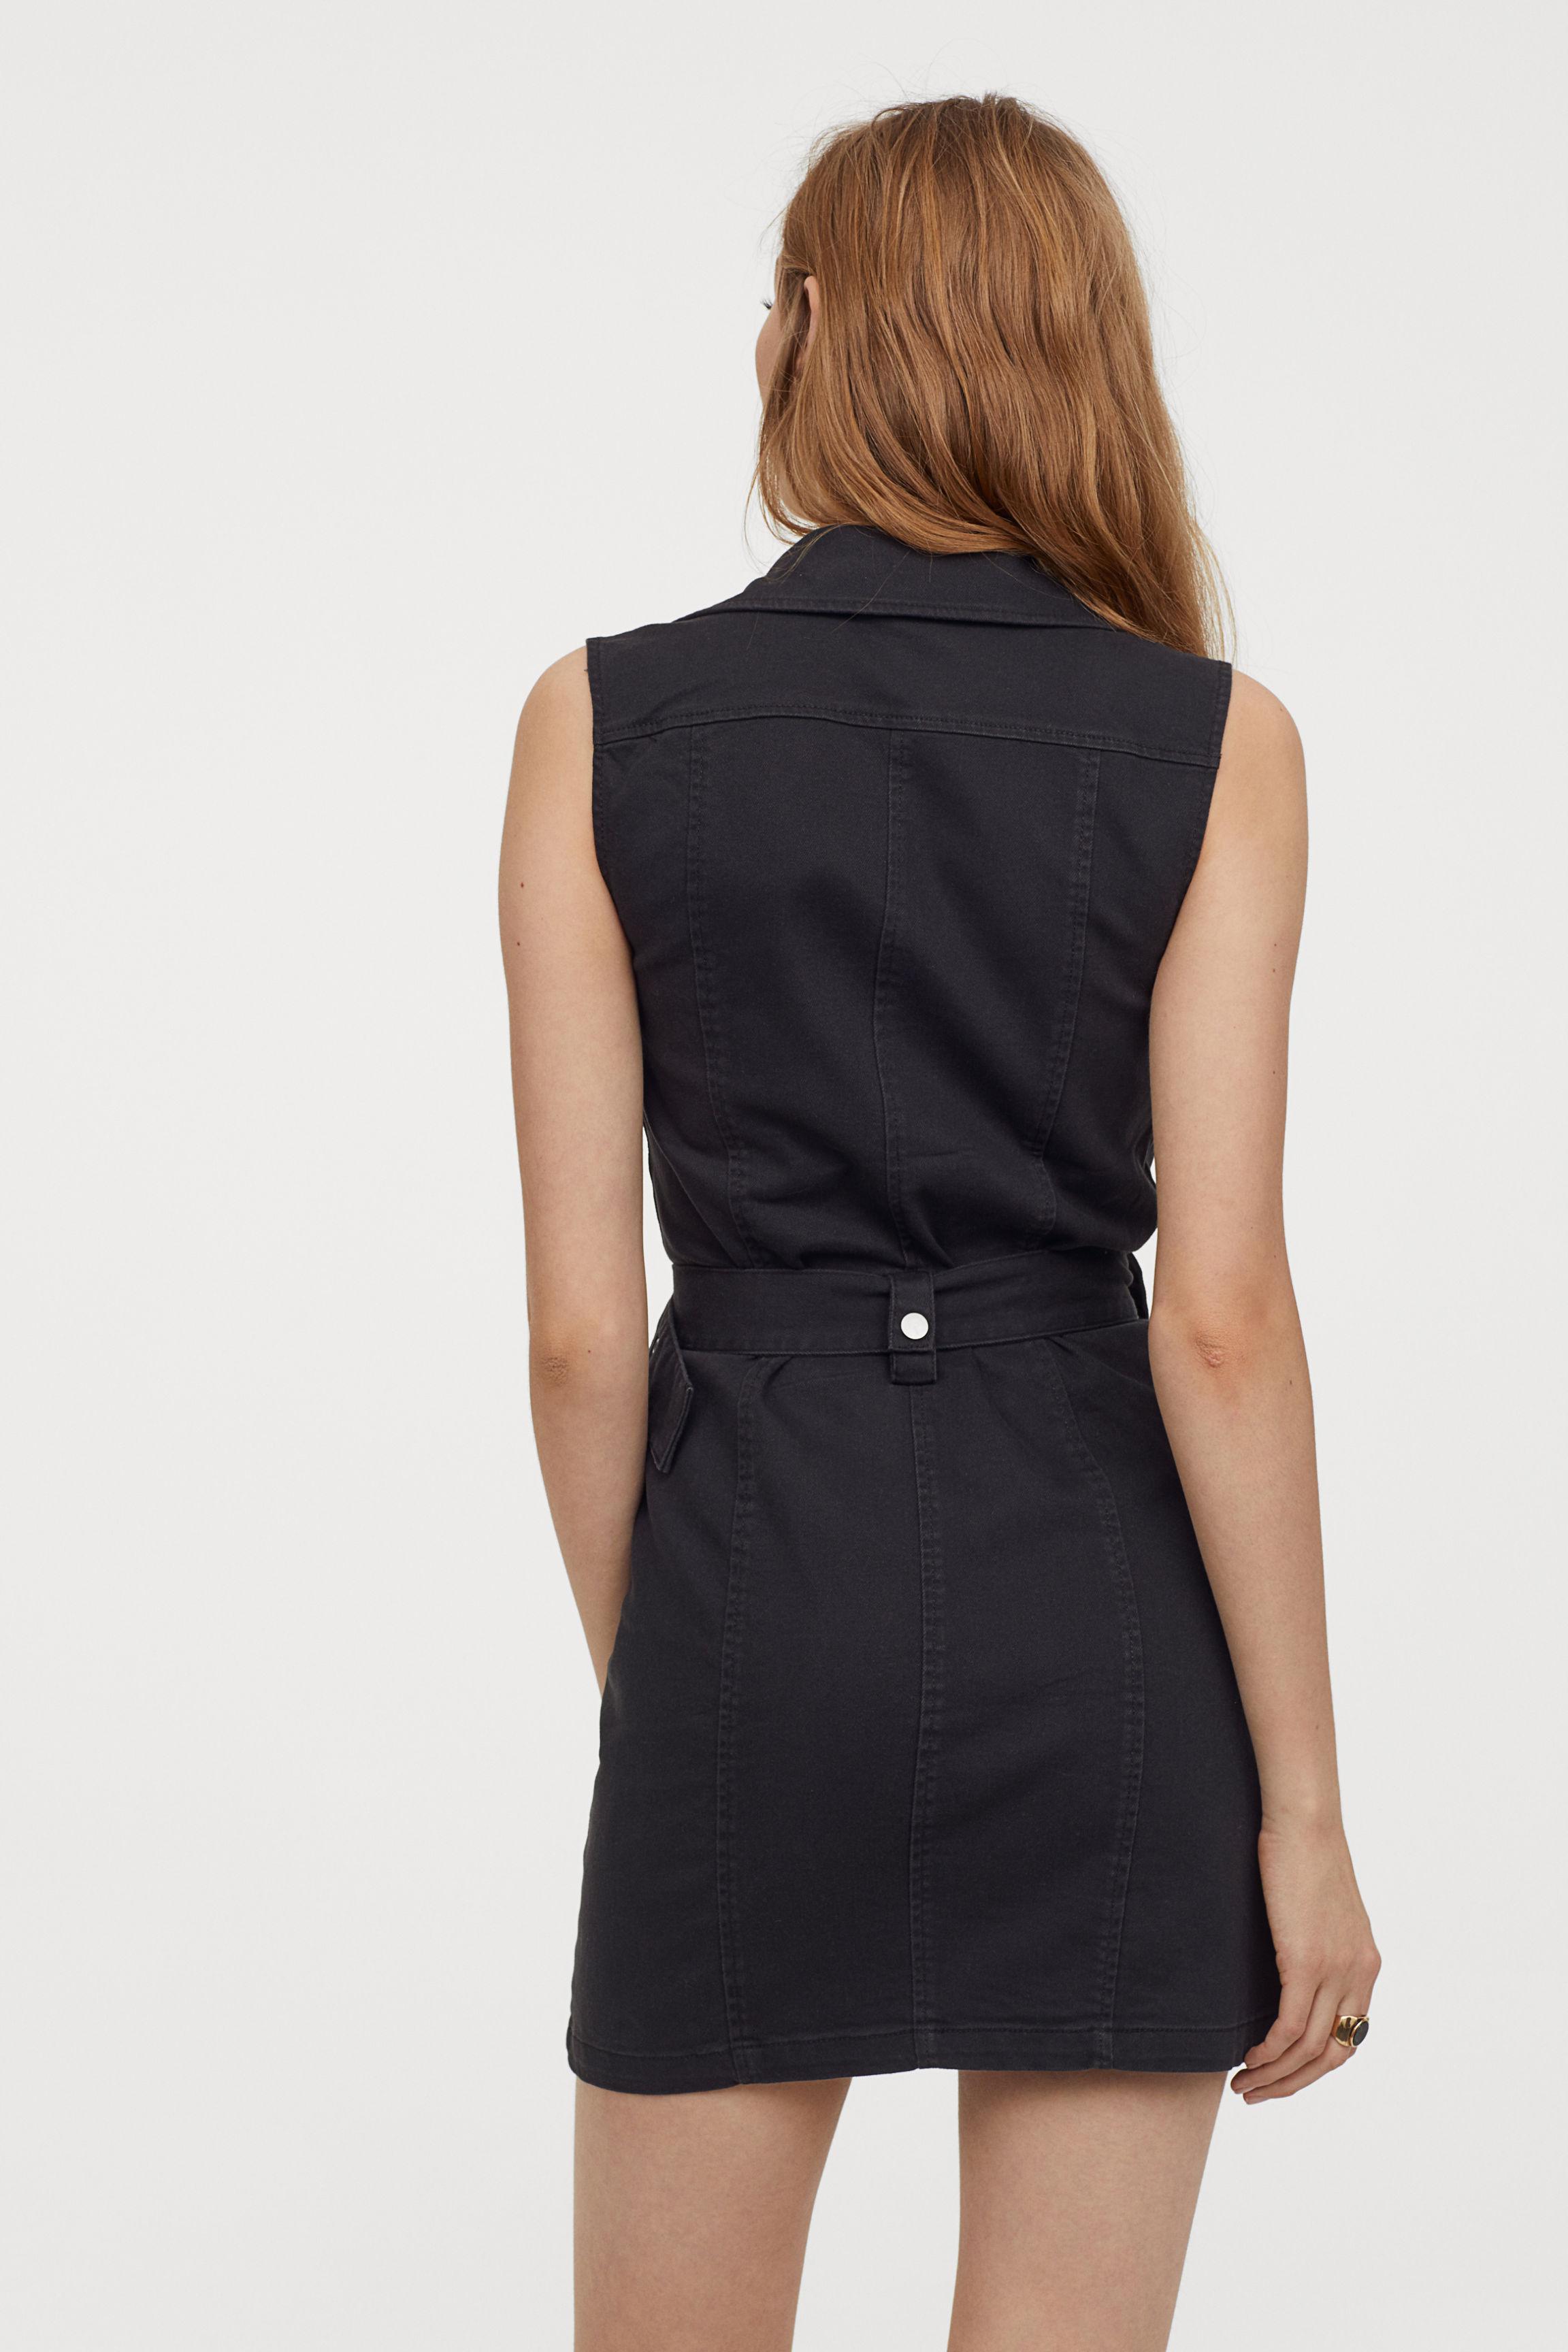 H&M Cotton Twill Biker Dress in Black | Lyst